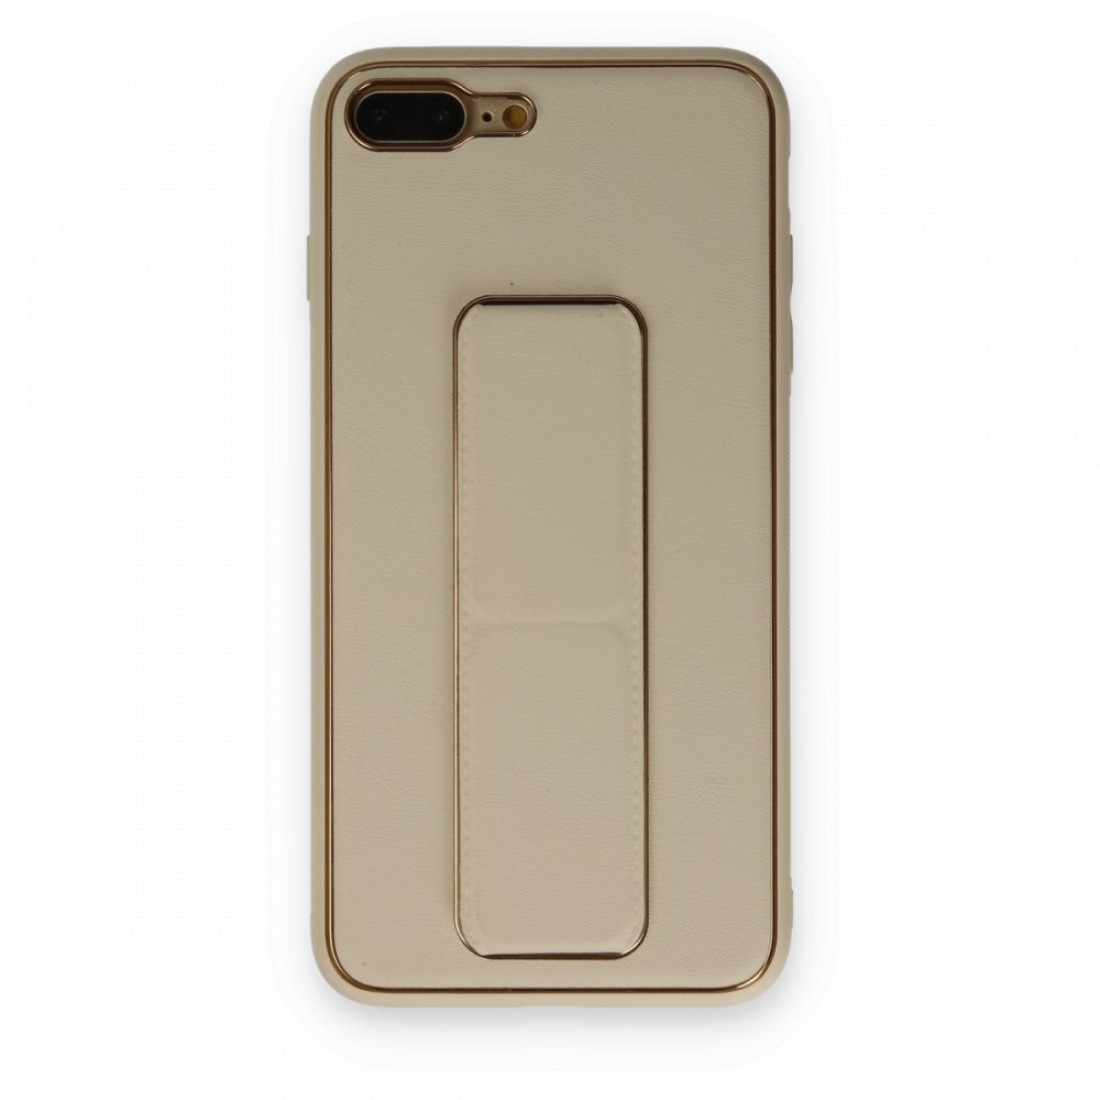 Apple iPhone 8 Plus Kılıf Coco Deri Standlı Kapak - Gold